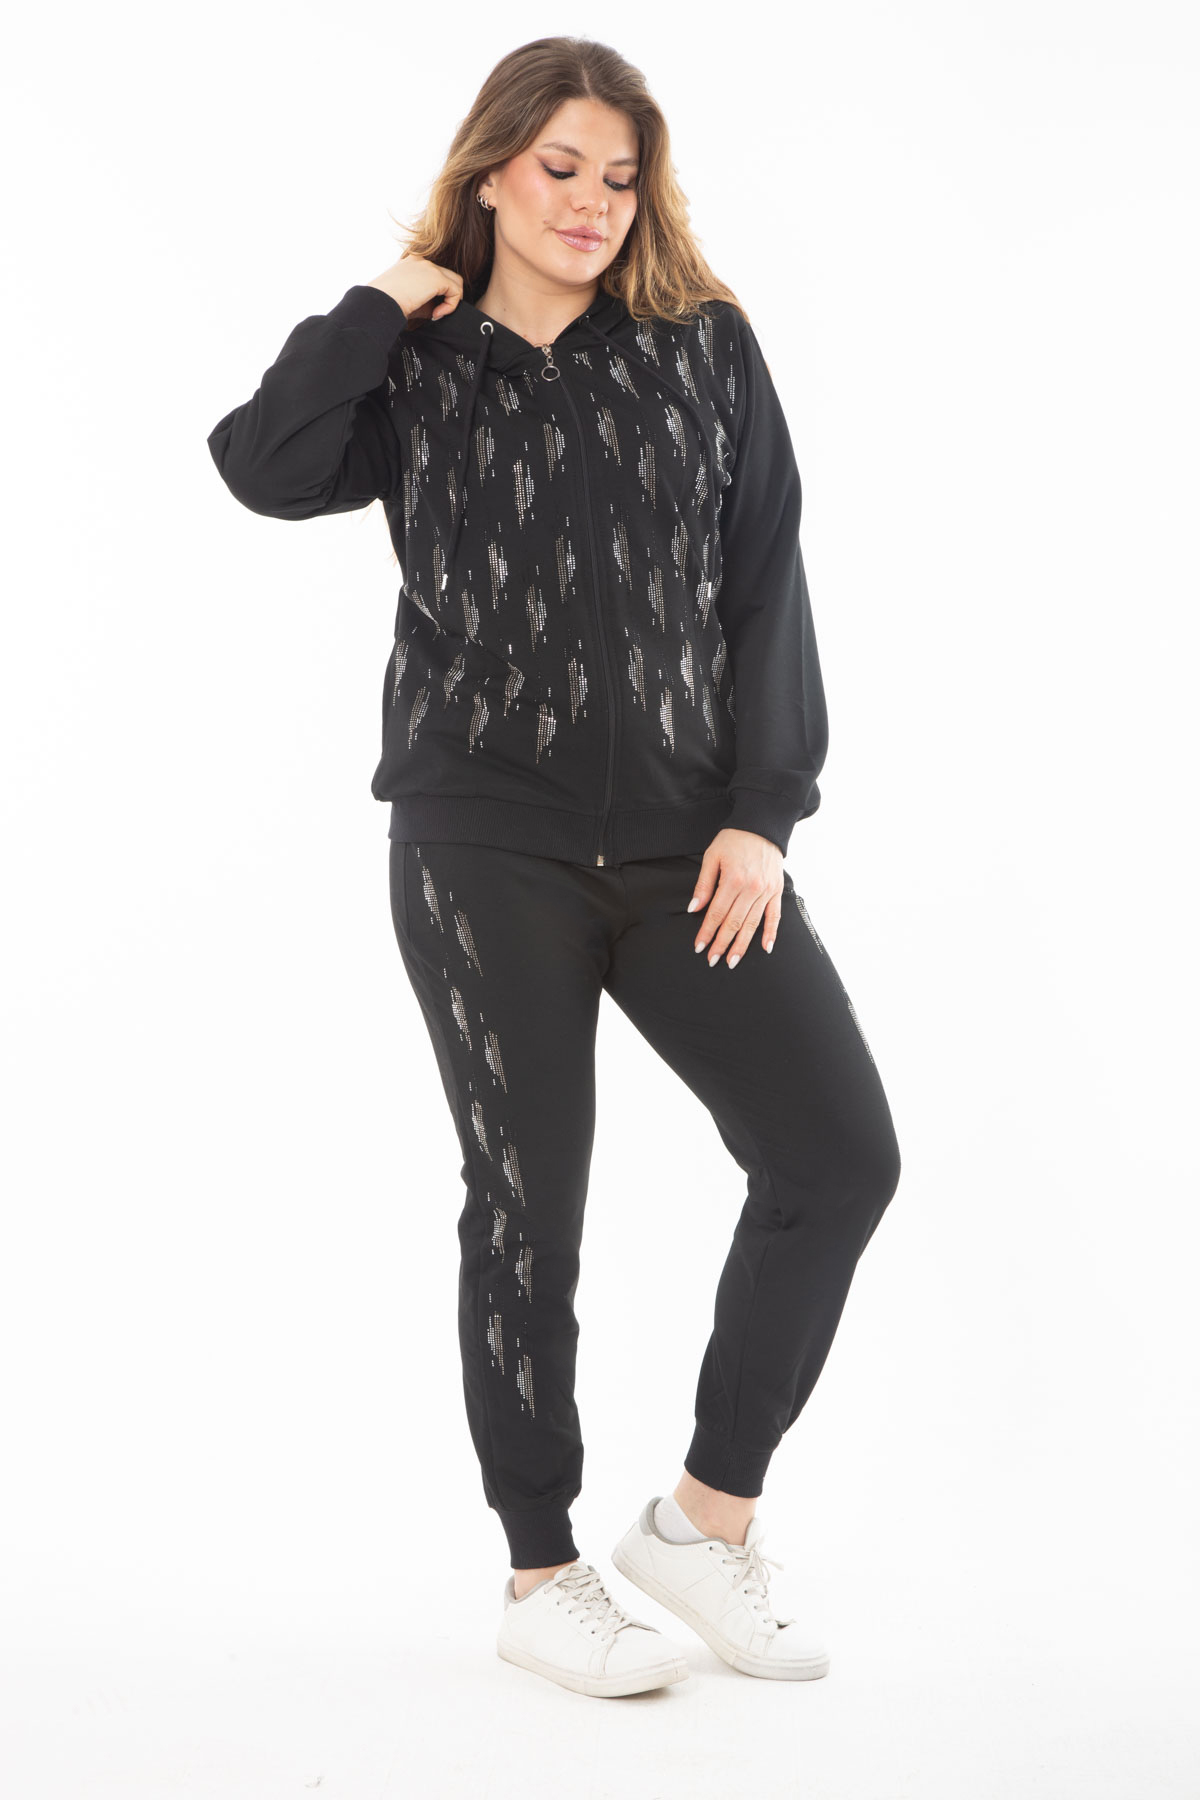 Levně Şans Women's Plus Size Black Stone Detailed Front Zipper Hooded Sweatshirt Trousers Double Suit